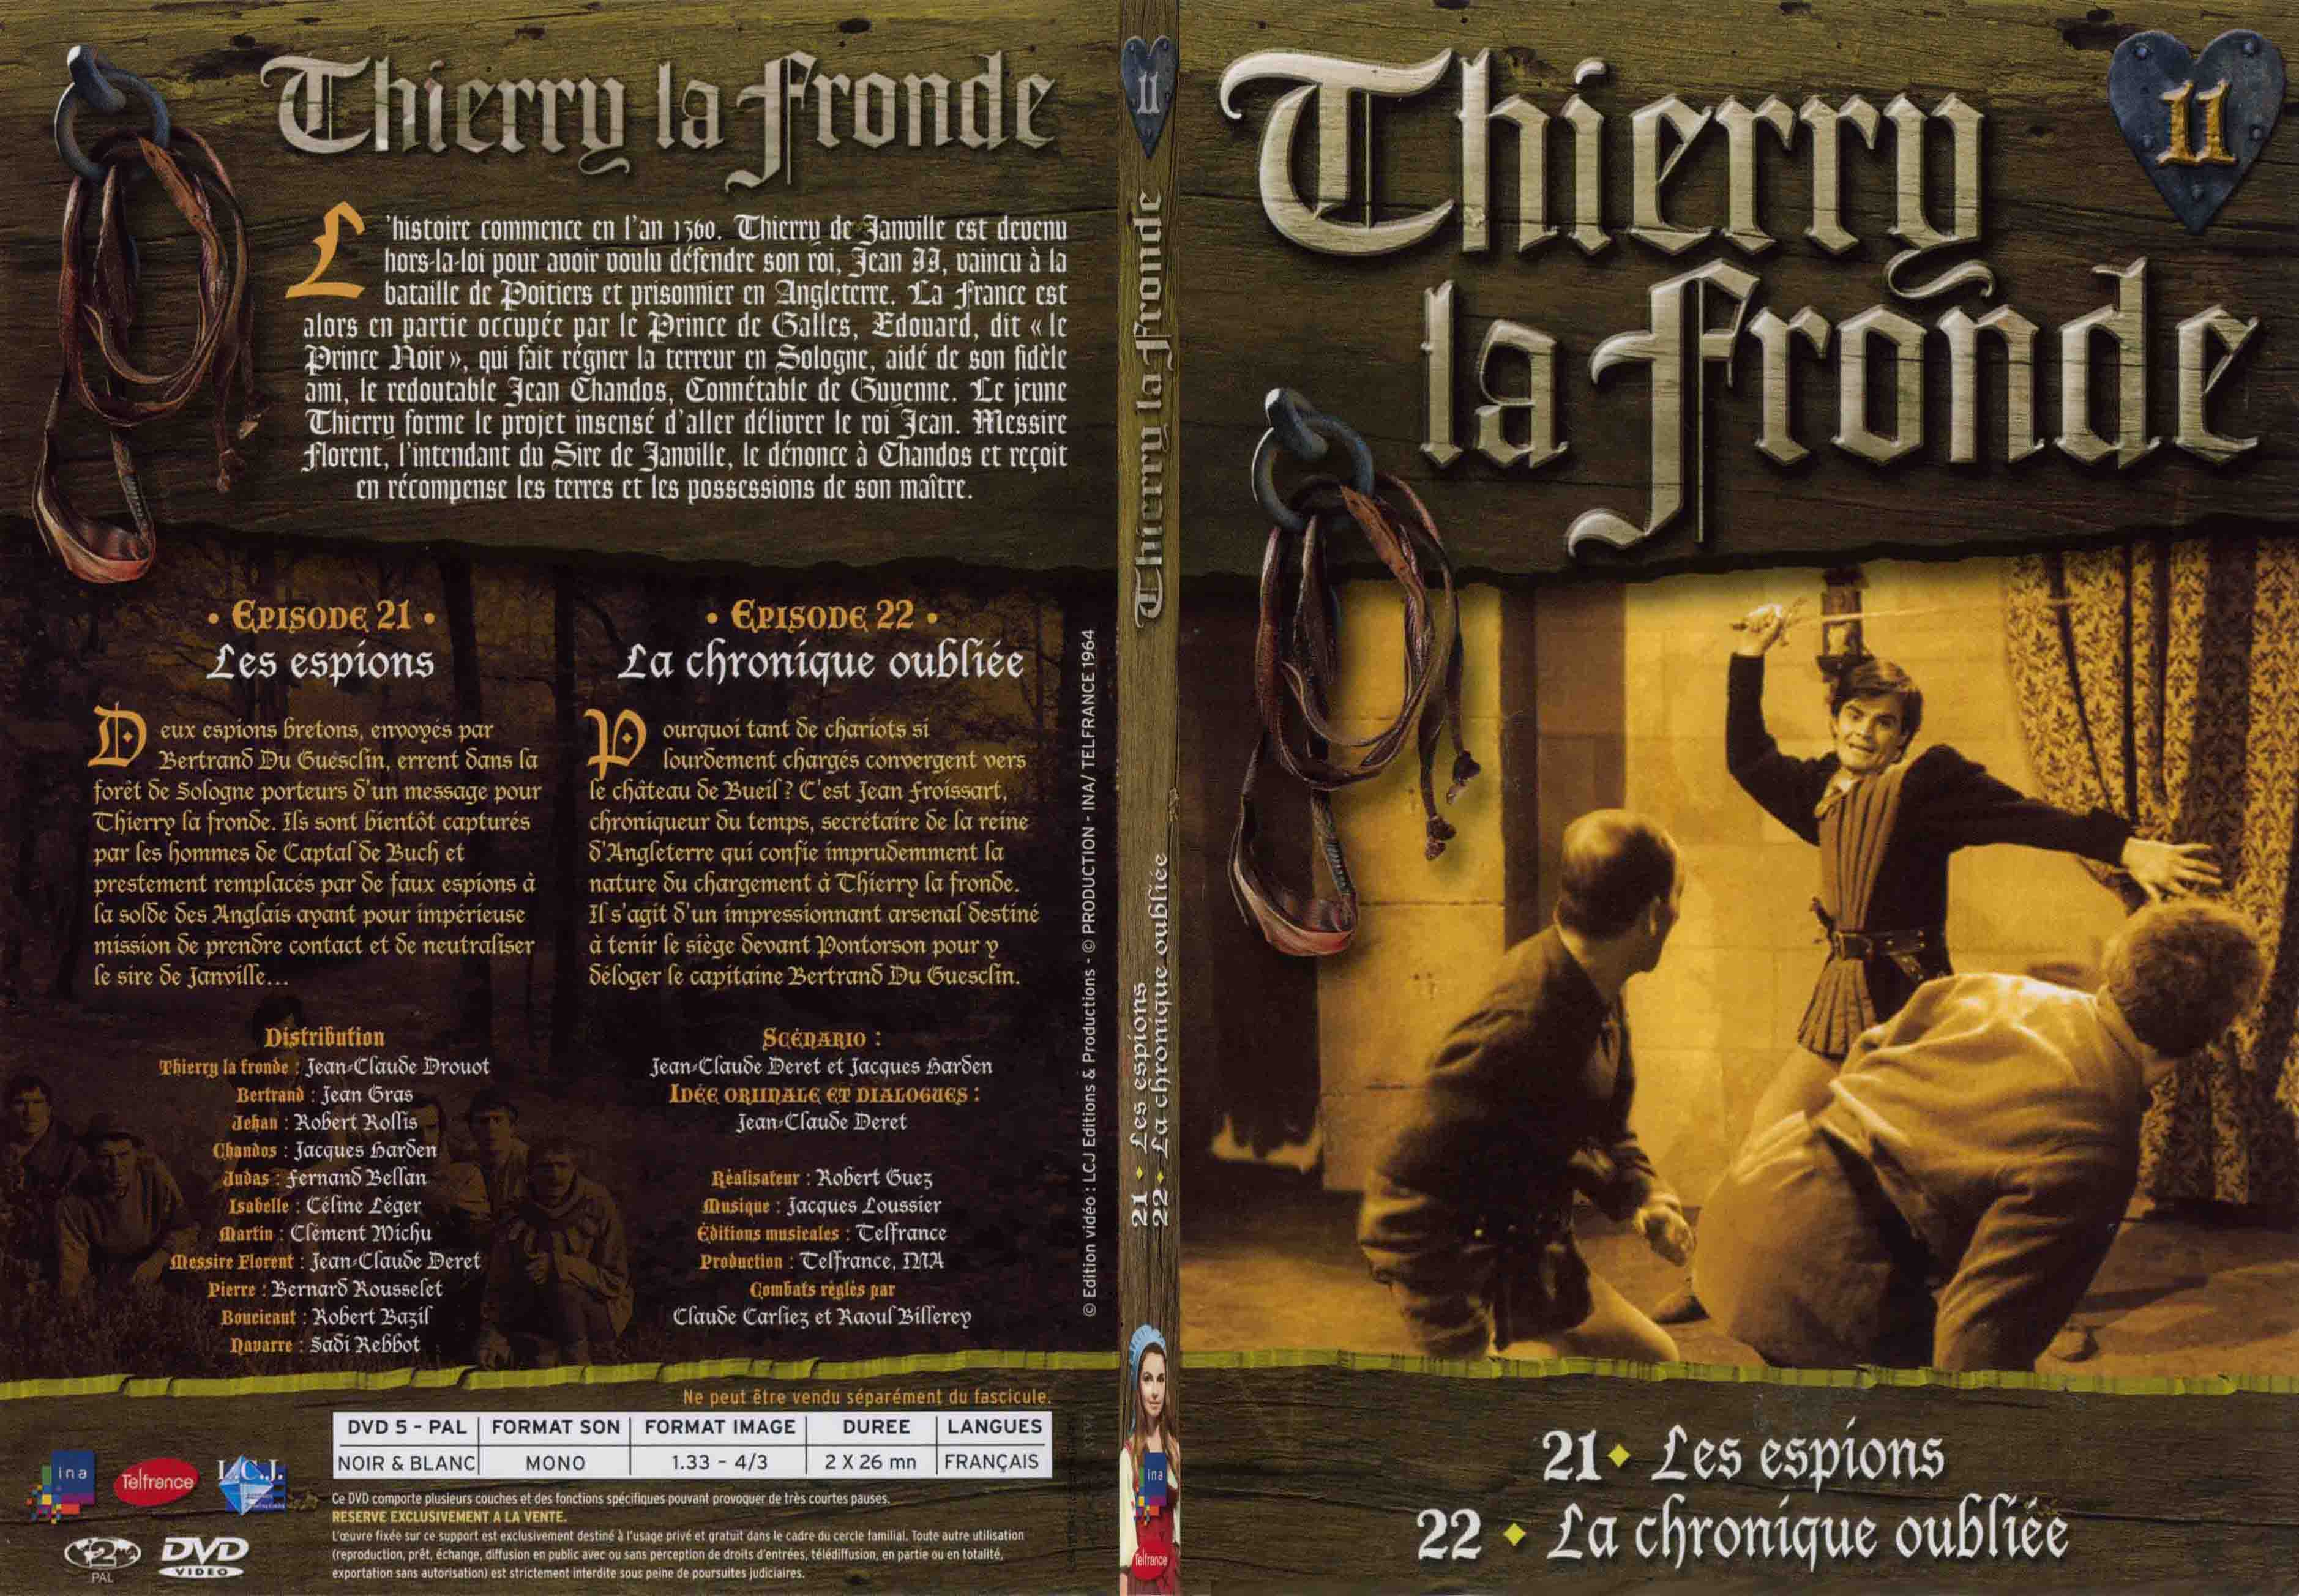 Jaquette DVD Thierry la Fronde vol 11 - SLIM